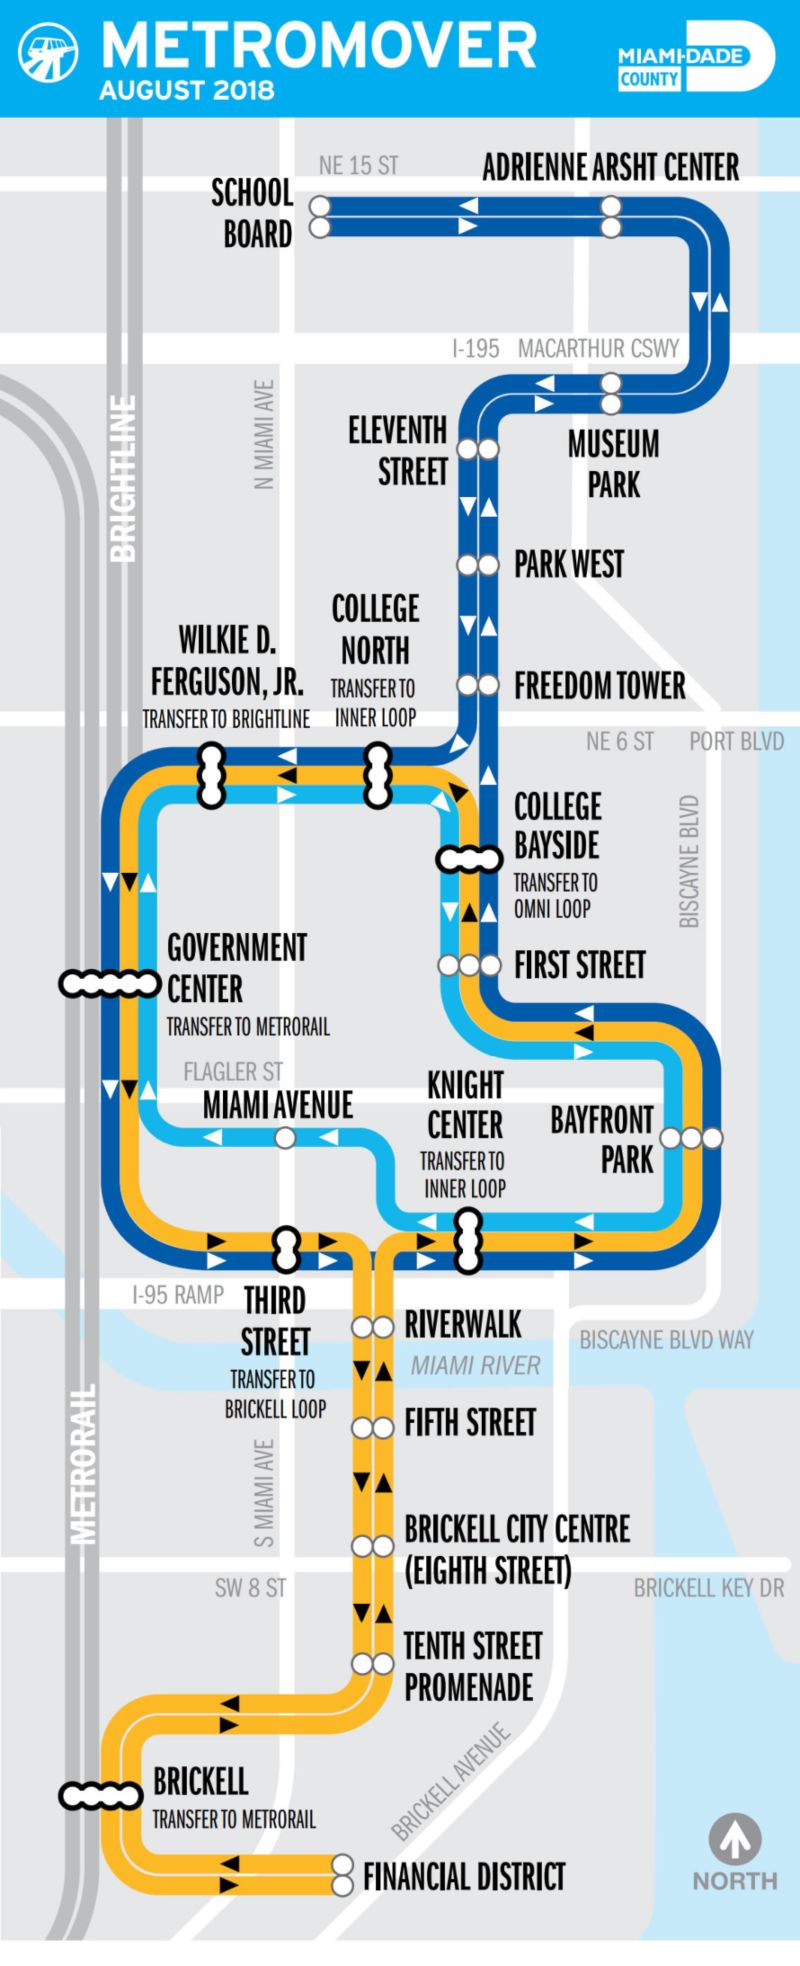 metromover miami - free transportation in downtown miami